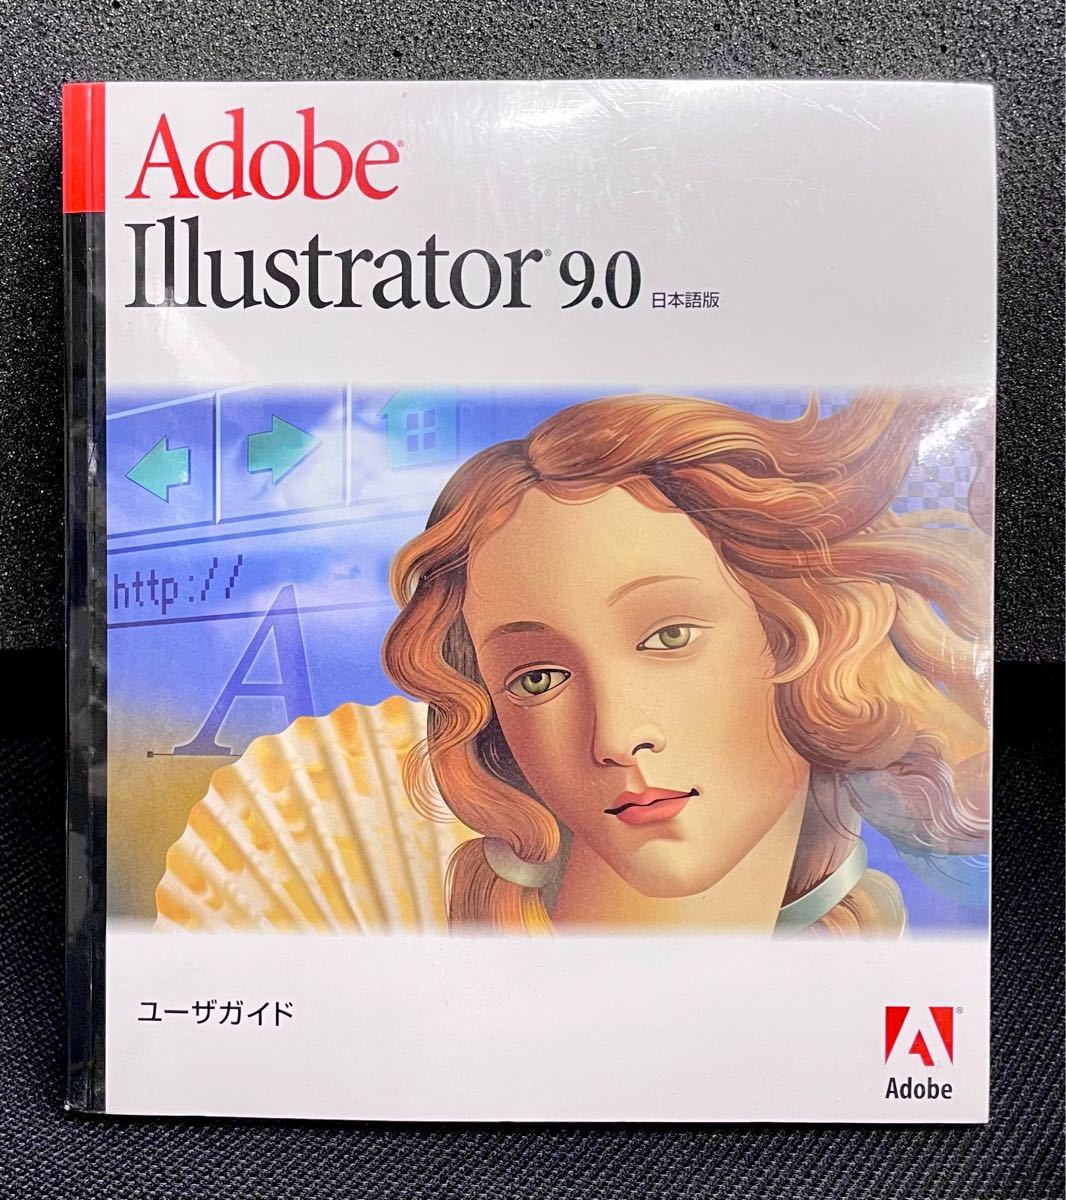 Adobe Illustrator 9 ユーザーガイド